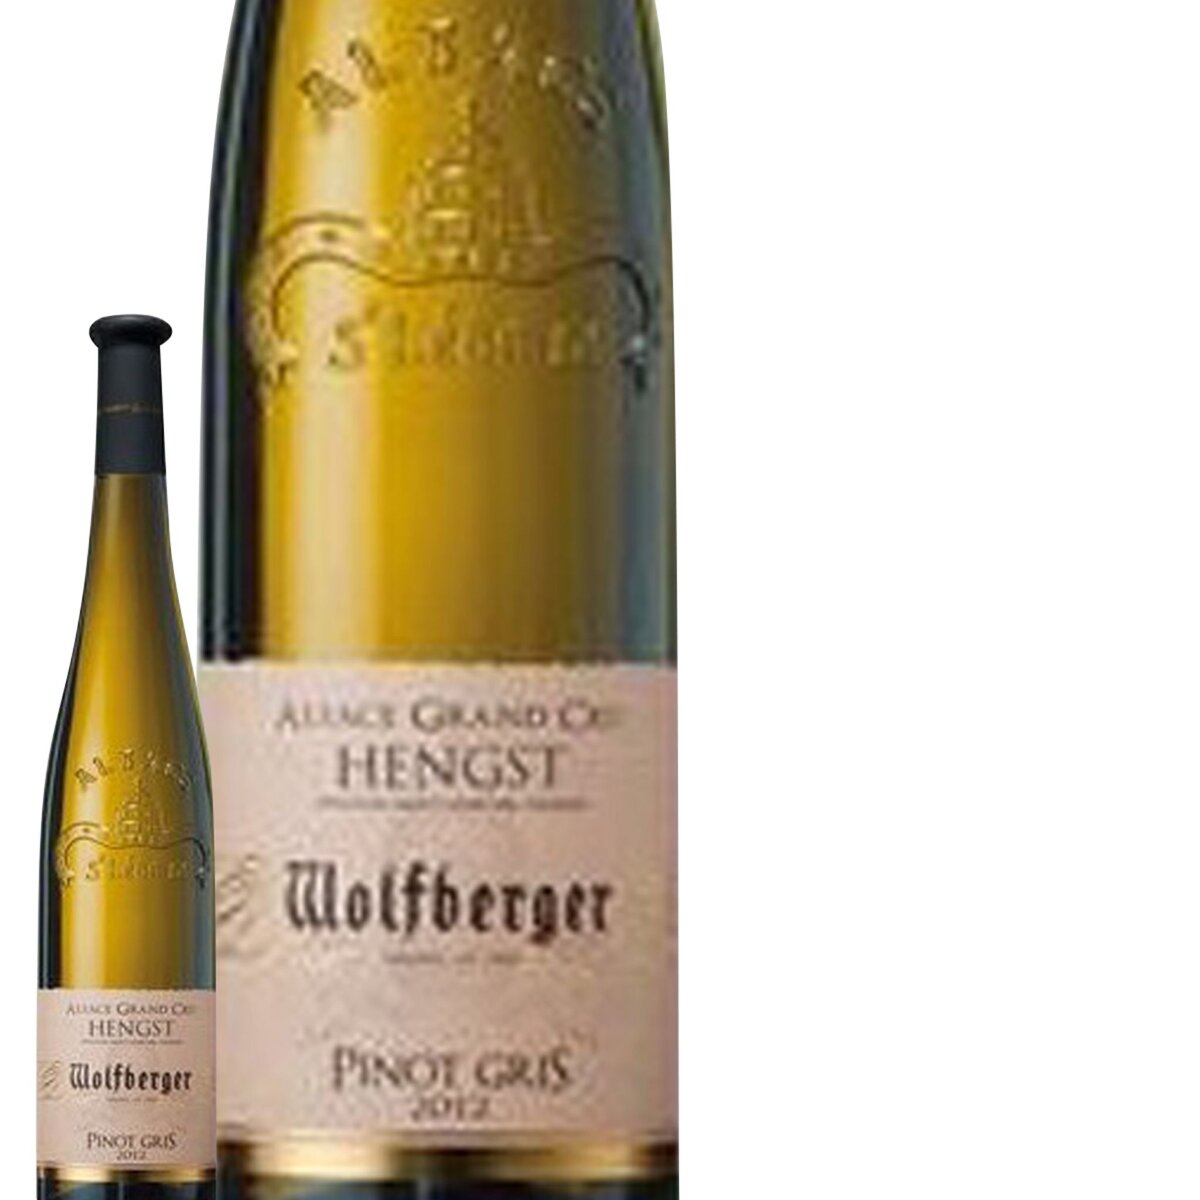 Wolfberger Alsace Pinot Gris Grand Cru Hengst Blanc 2013